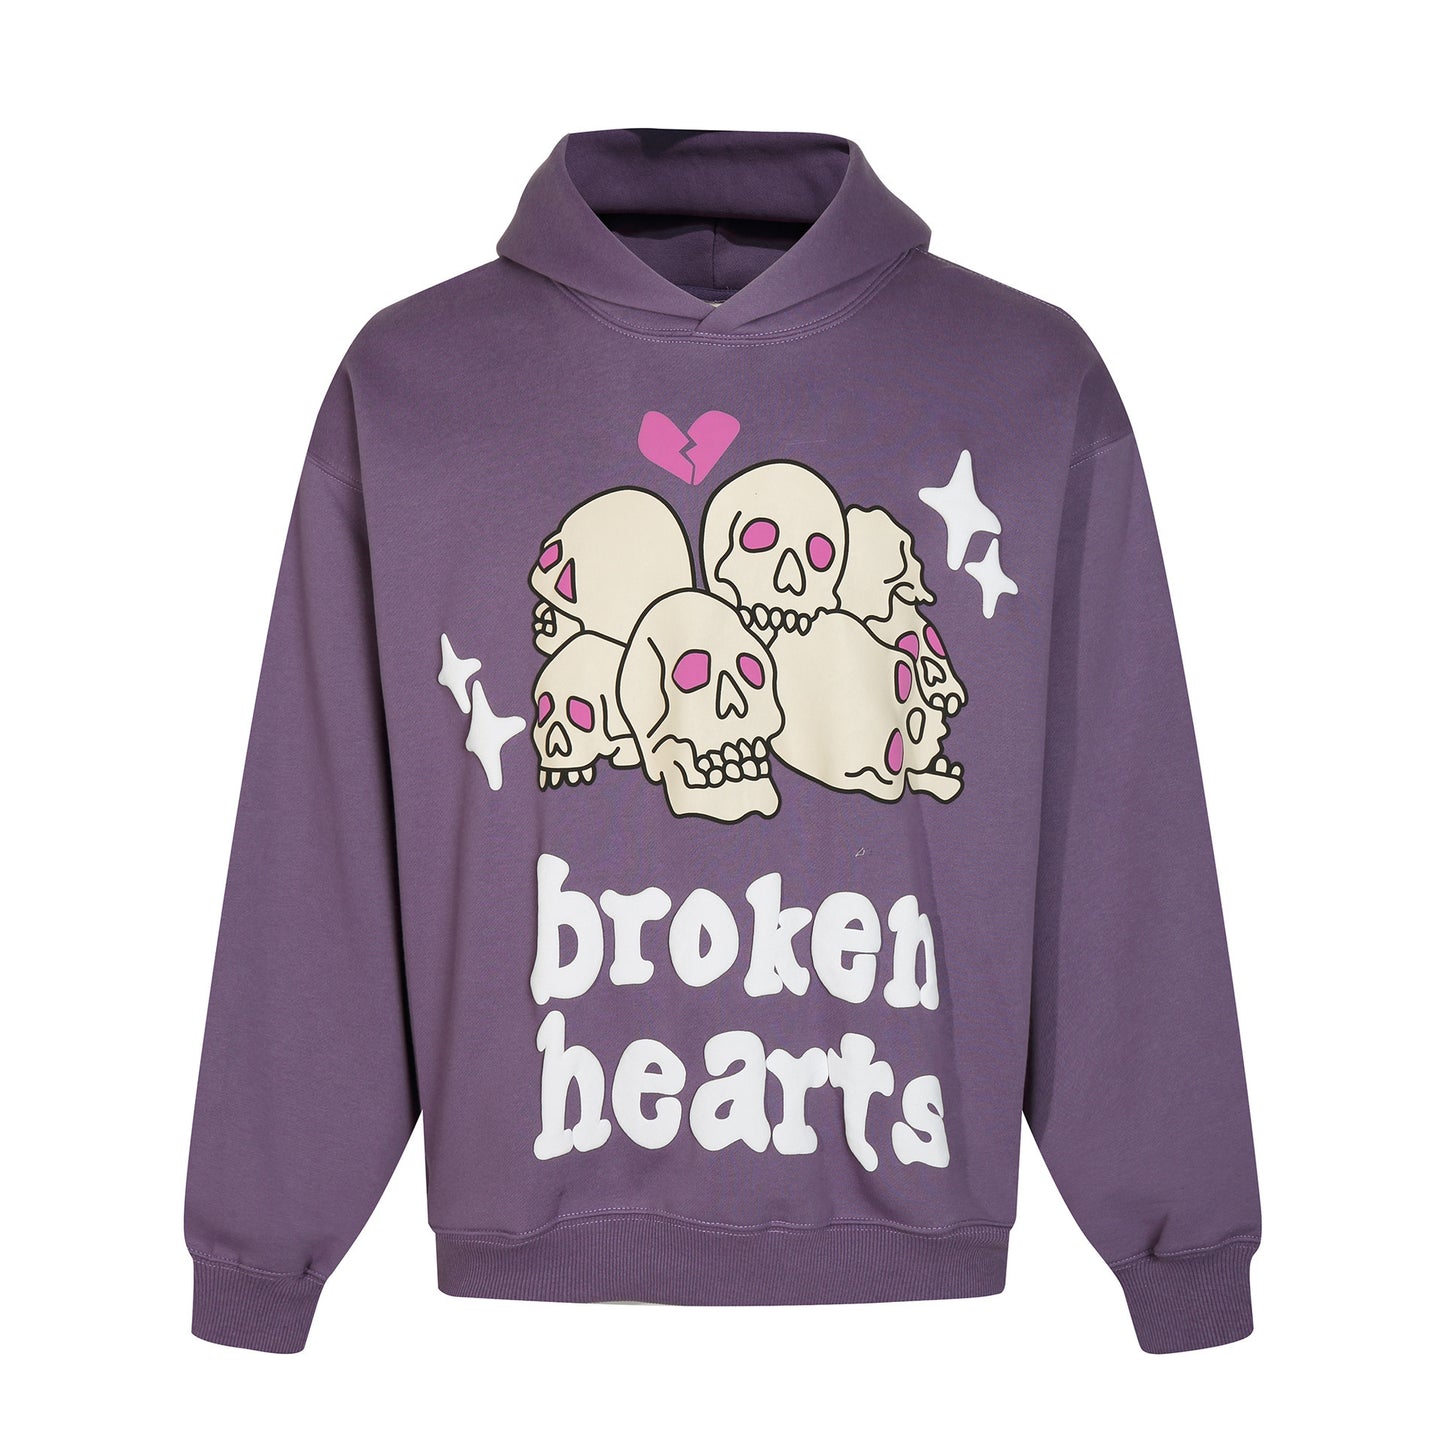 Broken Planet ‘broken hearts’ Hoodie Long-sleeved Sweatshirt